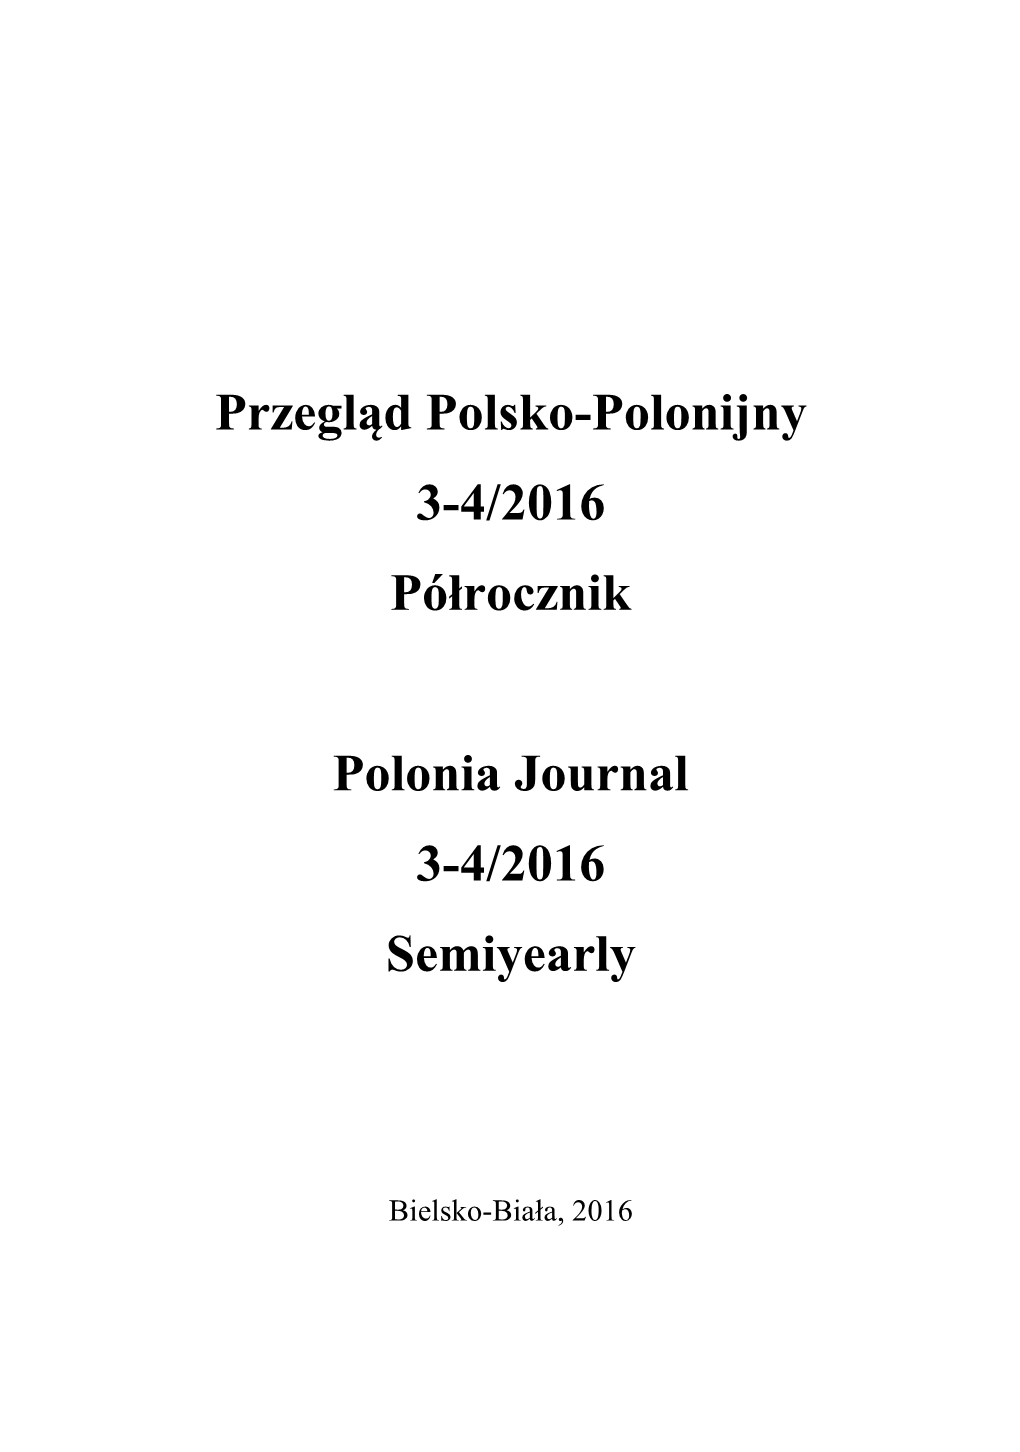 Przegląd Polsko-Polonijny 3-4/2016 Półrocznik Polonia Journal 3-4